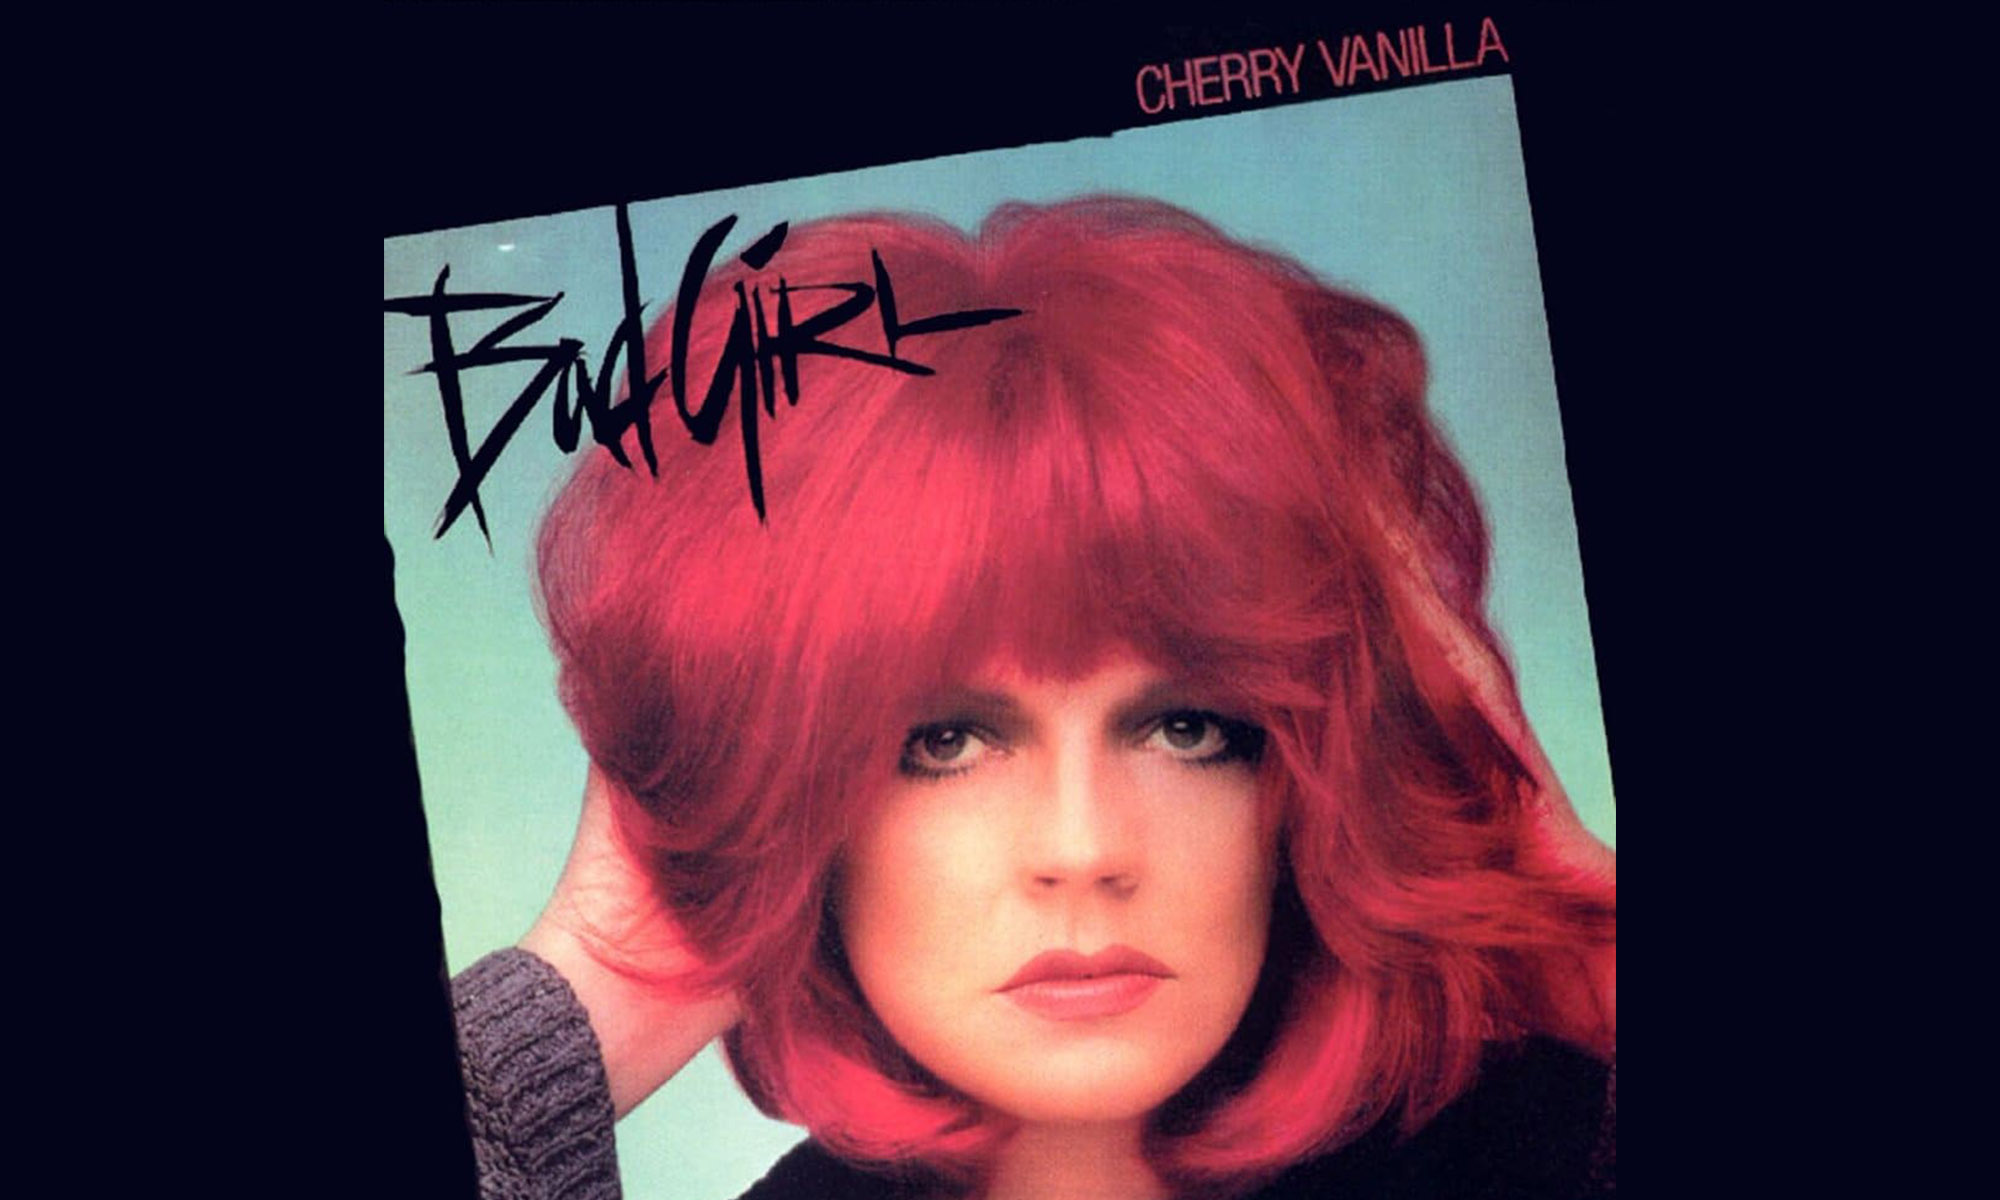 Premier album de Cherry Vanilla, "Bad Girl".